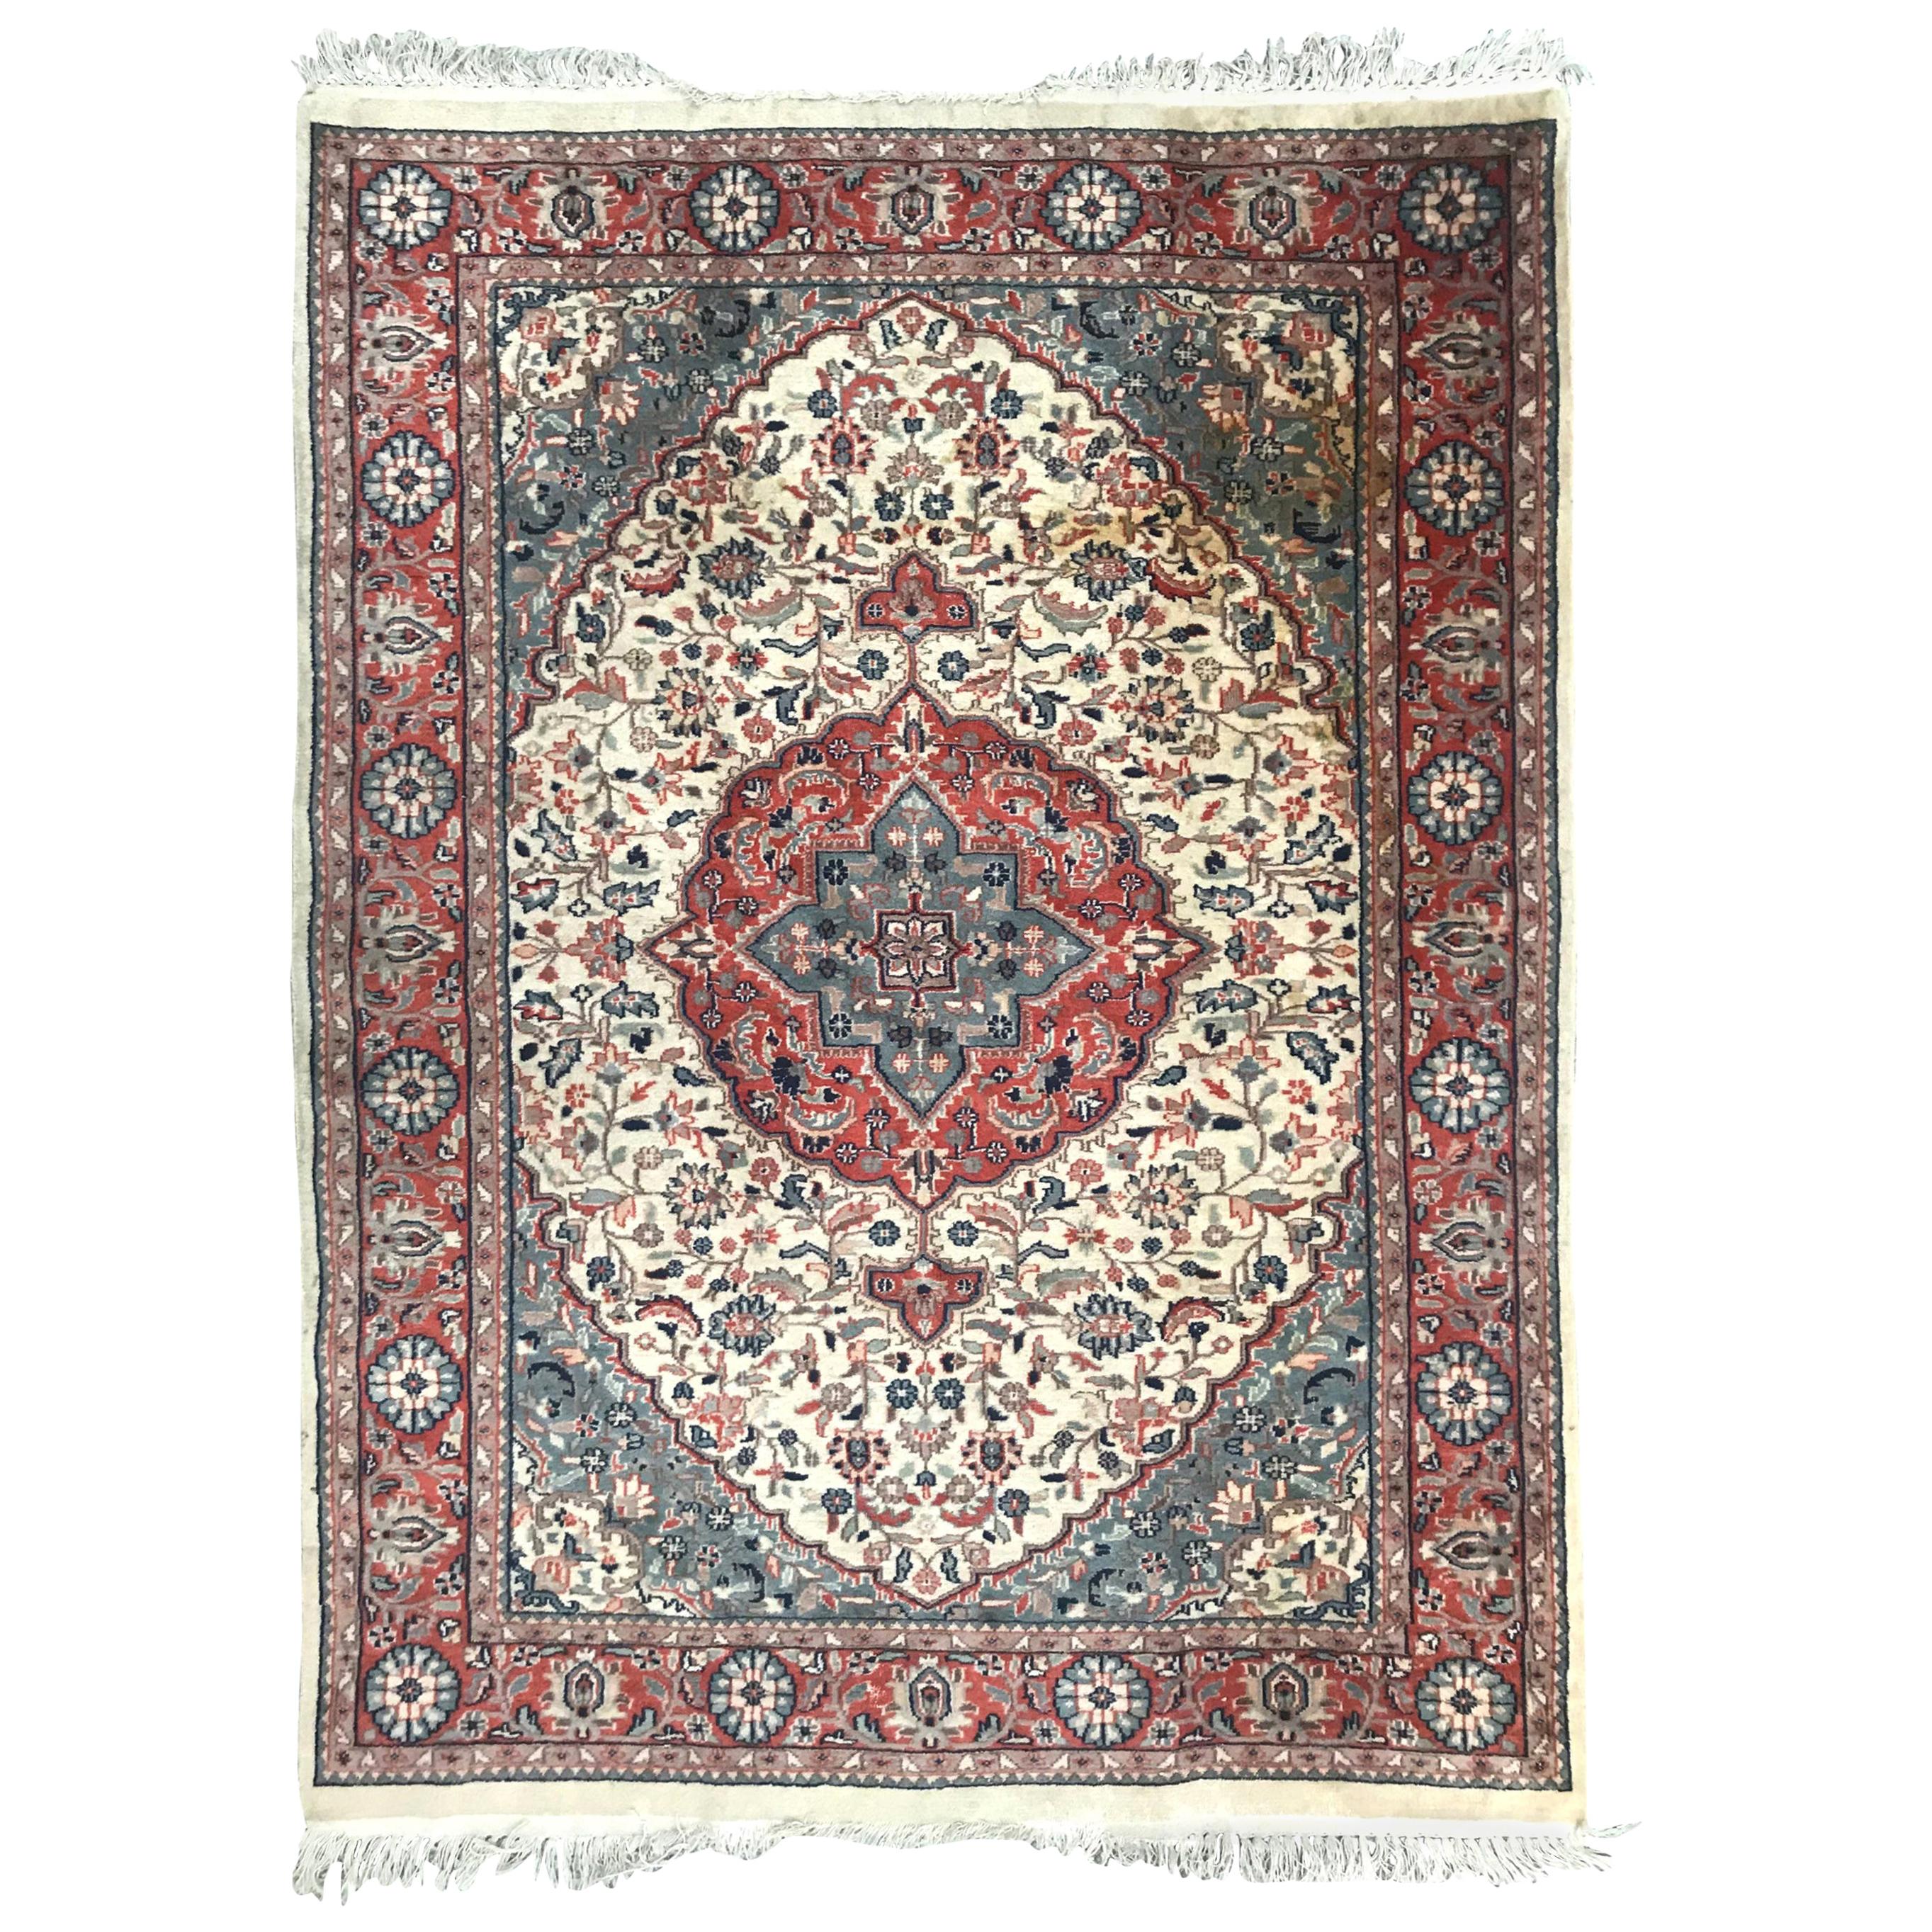 Schöner feiner pakistanischer Vintage-Teppich